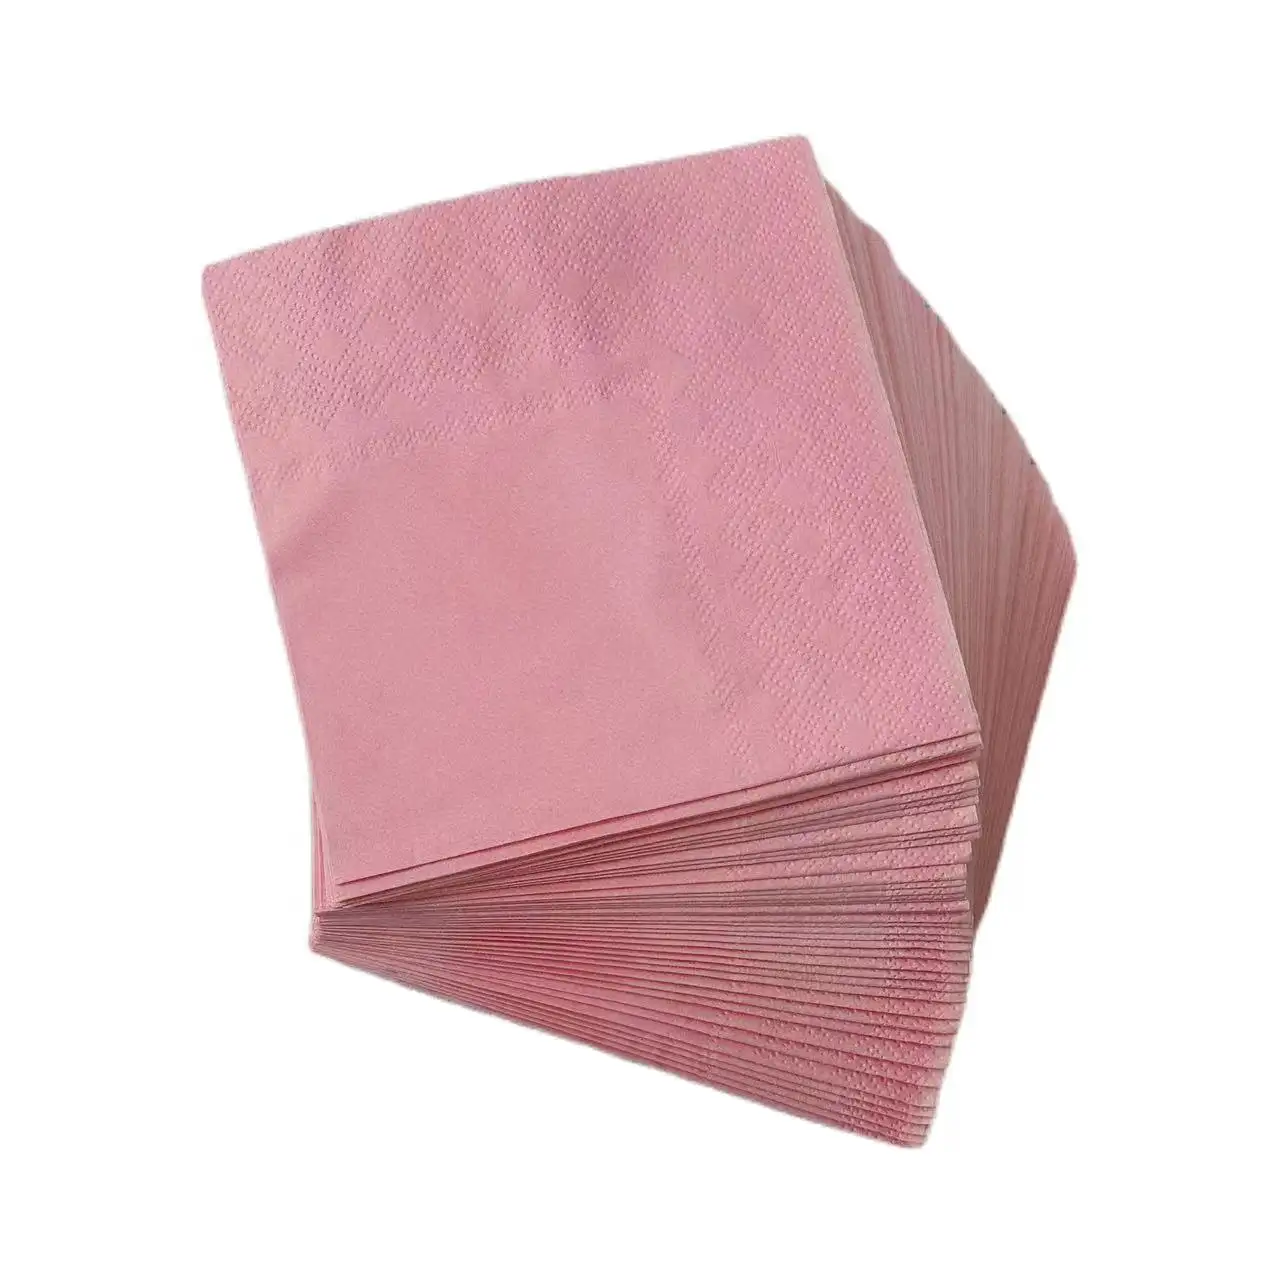 Пользовательские цветные столовые салфетки 50 листов одноразовые 2-слойные красочные бумажные салфетки